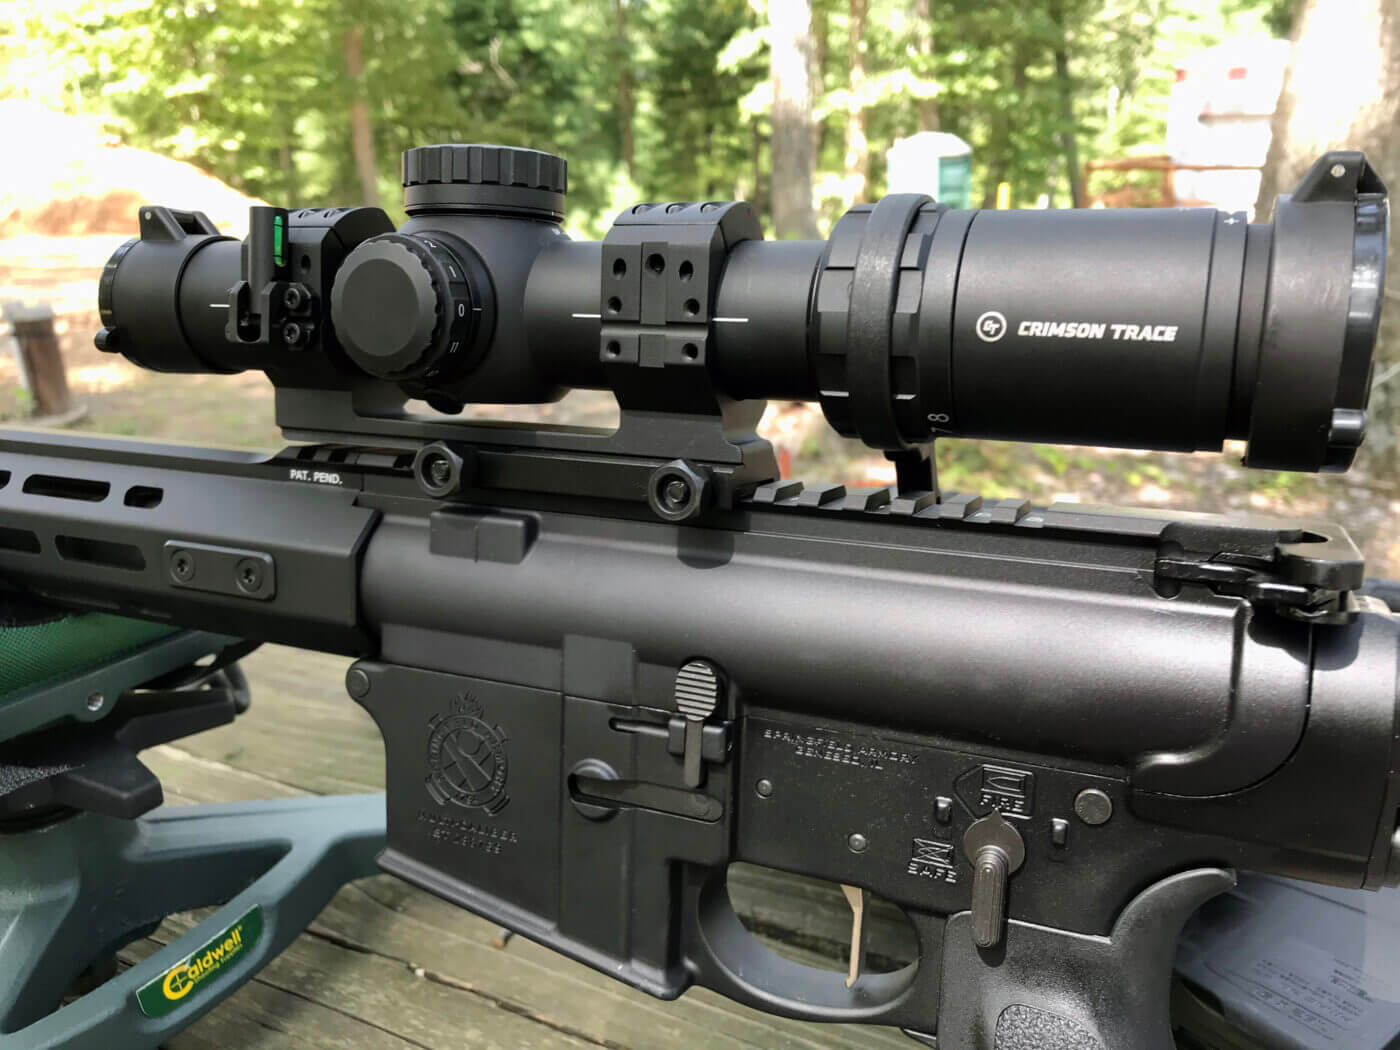 Wheeler Engineering mount for optic on rifle